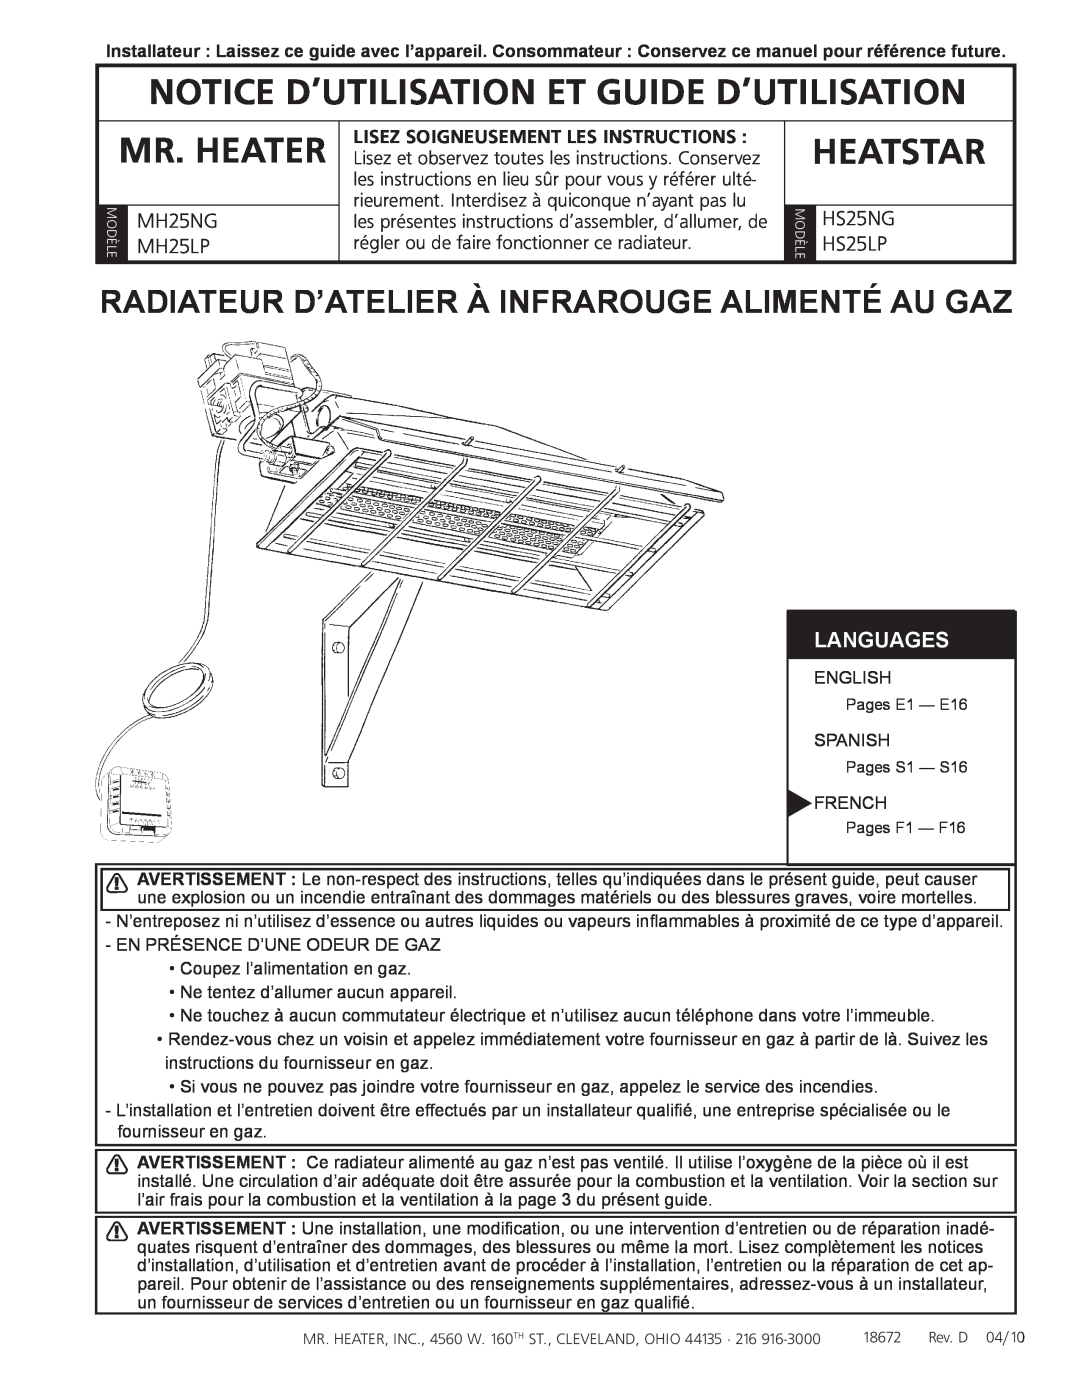 Mr. Heater HS25NG/LP Notice d’utilisation et guide d’utilisation, Radiateur D’Atelier À Infrarouge Alimenté Au Gaz, MH25NG 